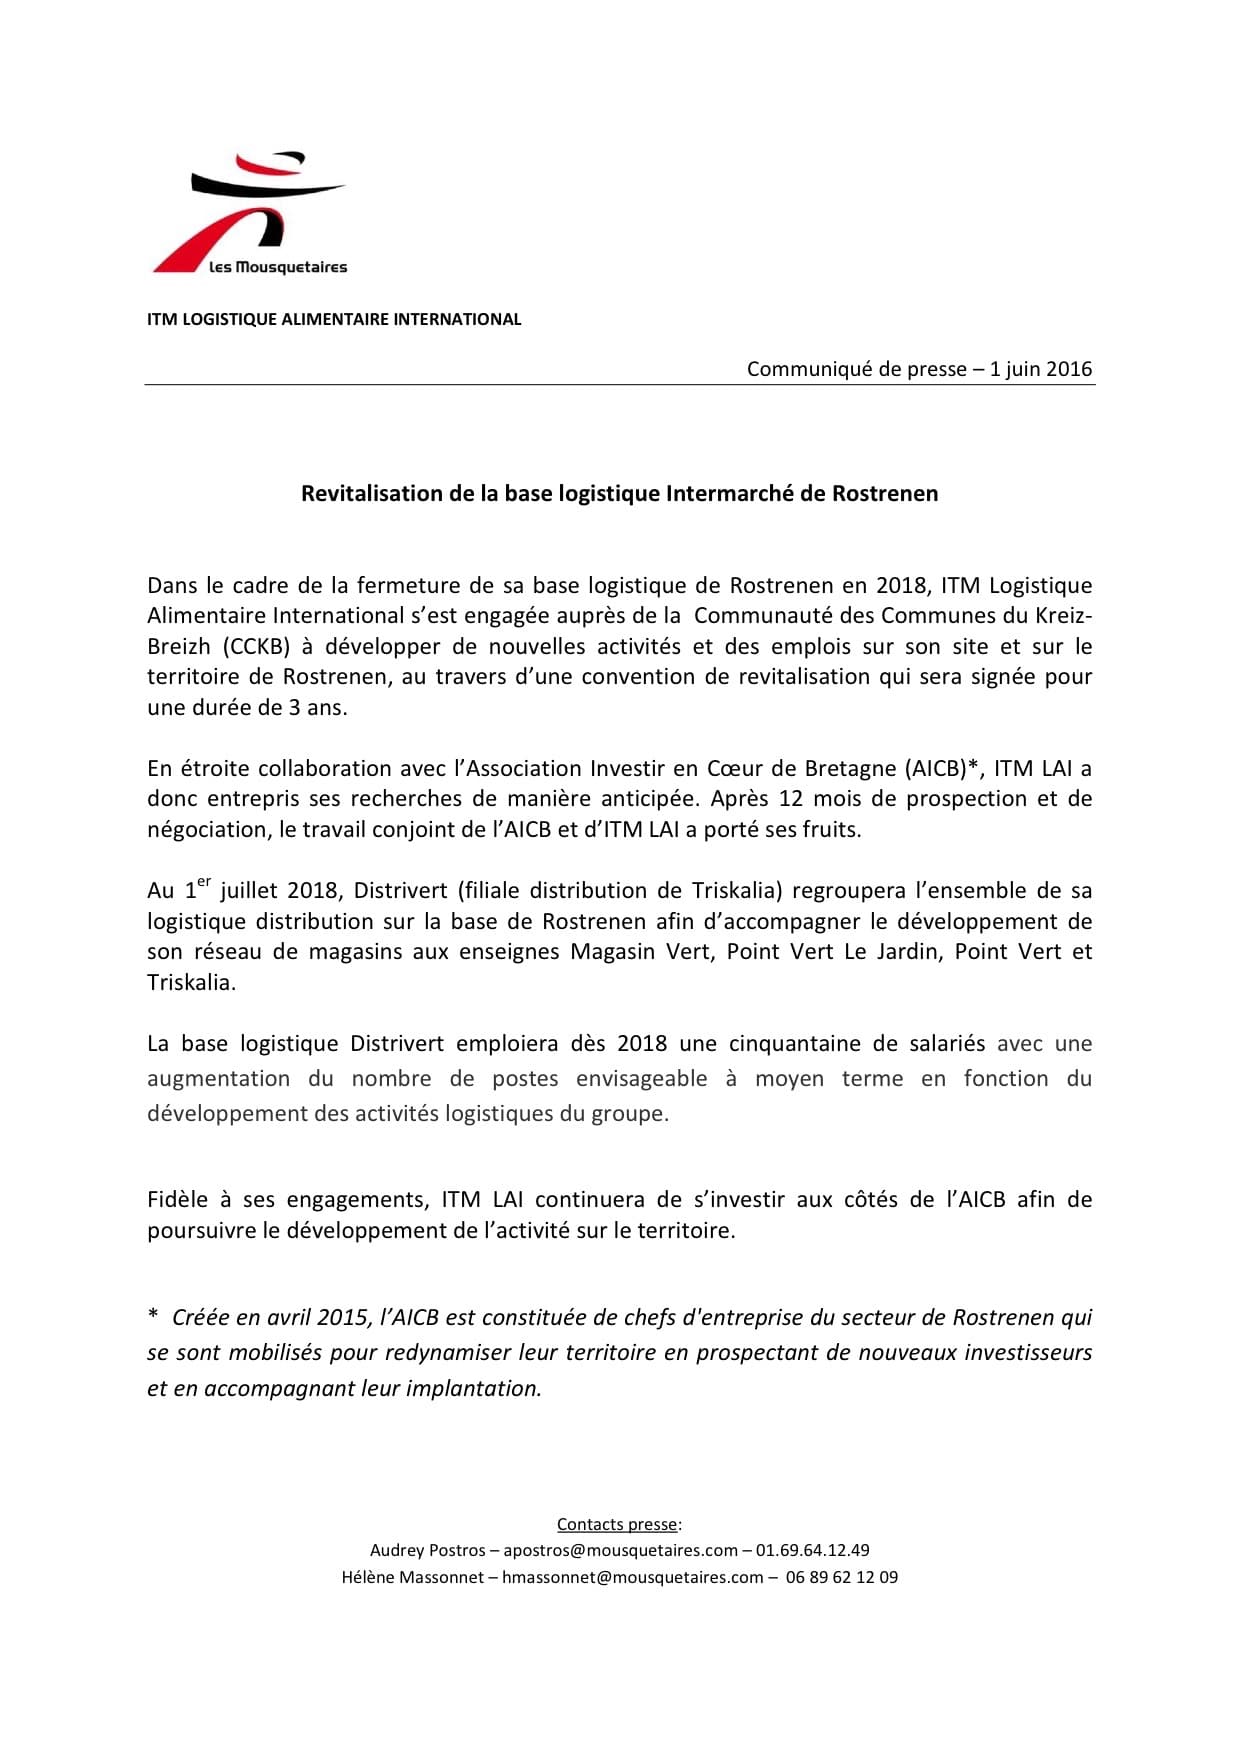 Communiqué de presse - ITM - Revitalisation de la base logistique intermarché de Rostrenen